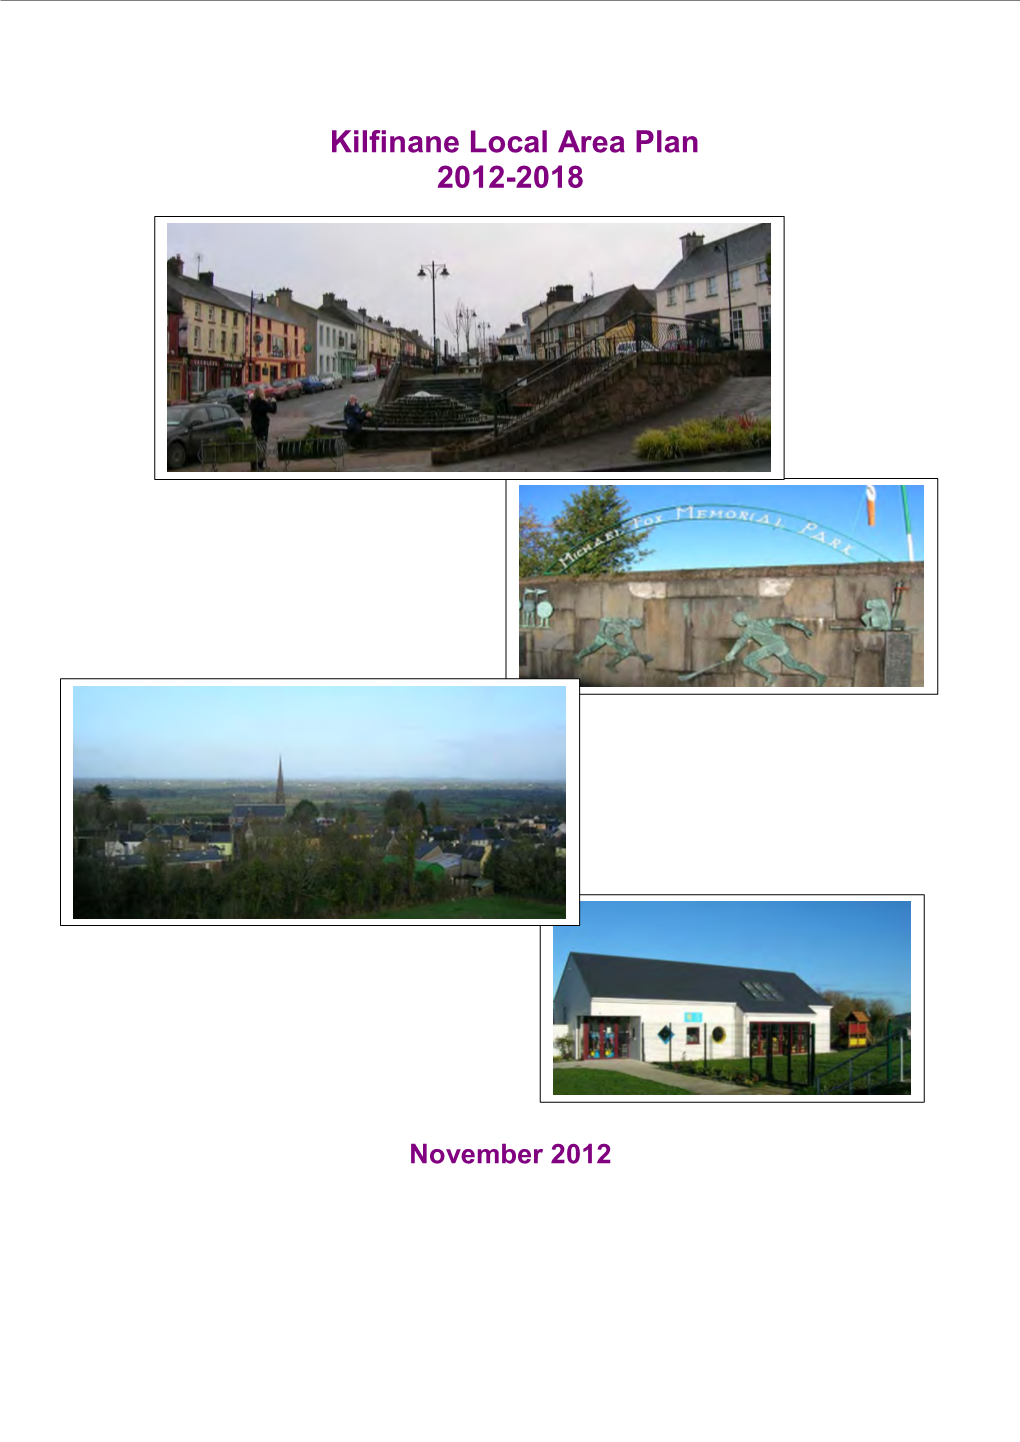 Kilfinane Local Area Plan 2012-2018